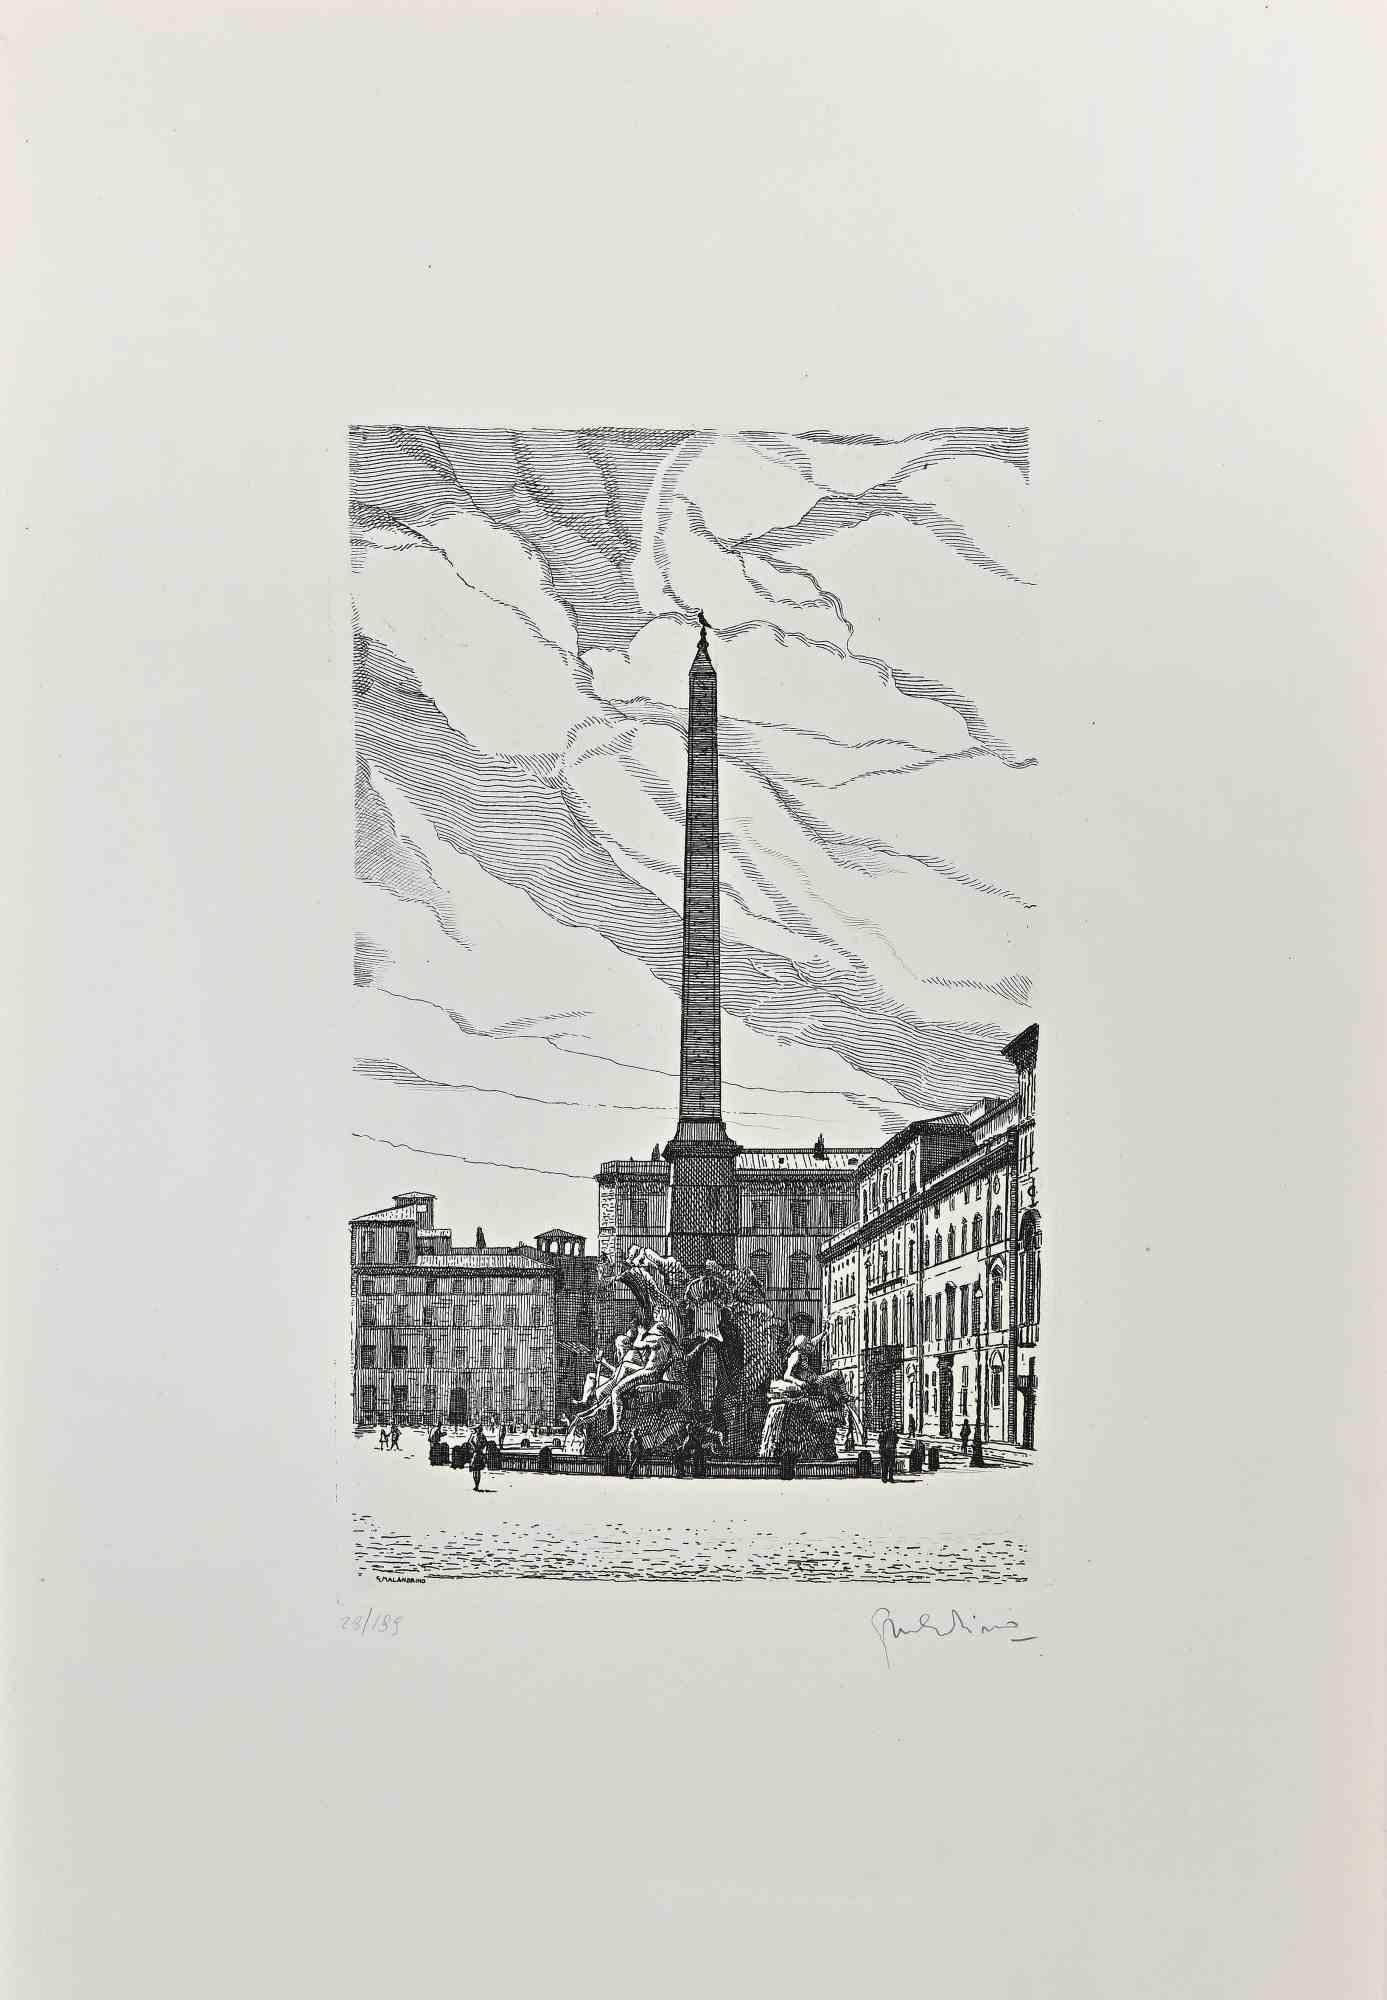 La Fontaine des quatre fleuves est une œuvre d'art contemporain réalisée en 1970 par l'artiste italien Giuseppe Malandrino (Modica, 1910 - Rome, 1979).

Gravure sur carton. Signé à la main au crayon en bas à droite.

Numéroté en bas à gauche